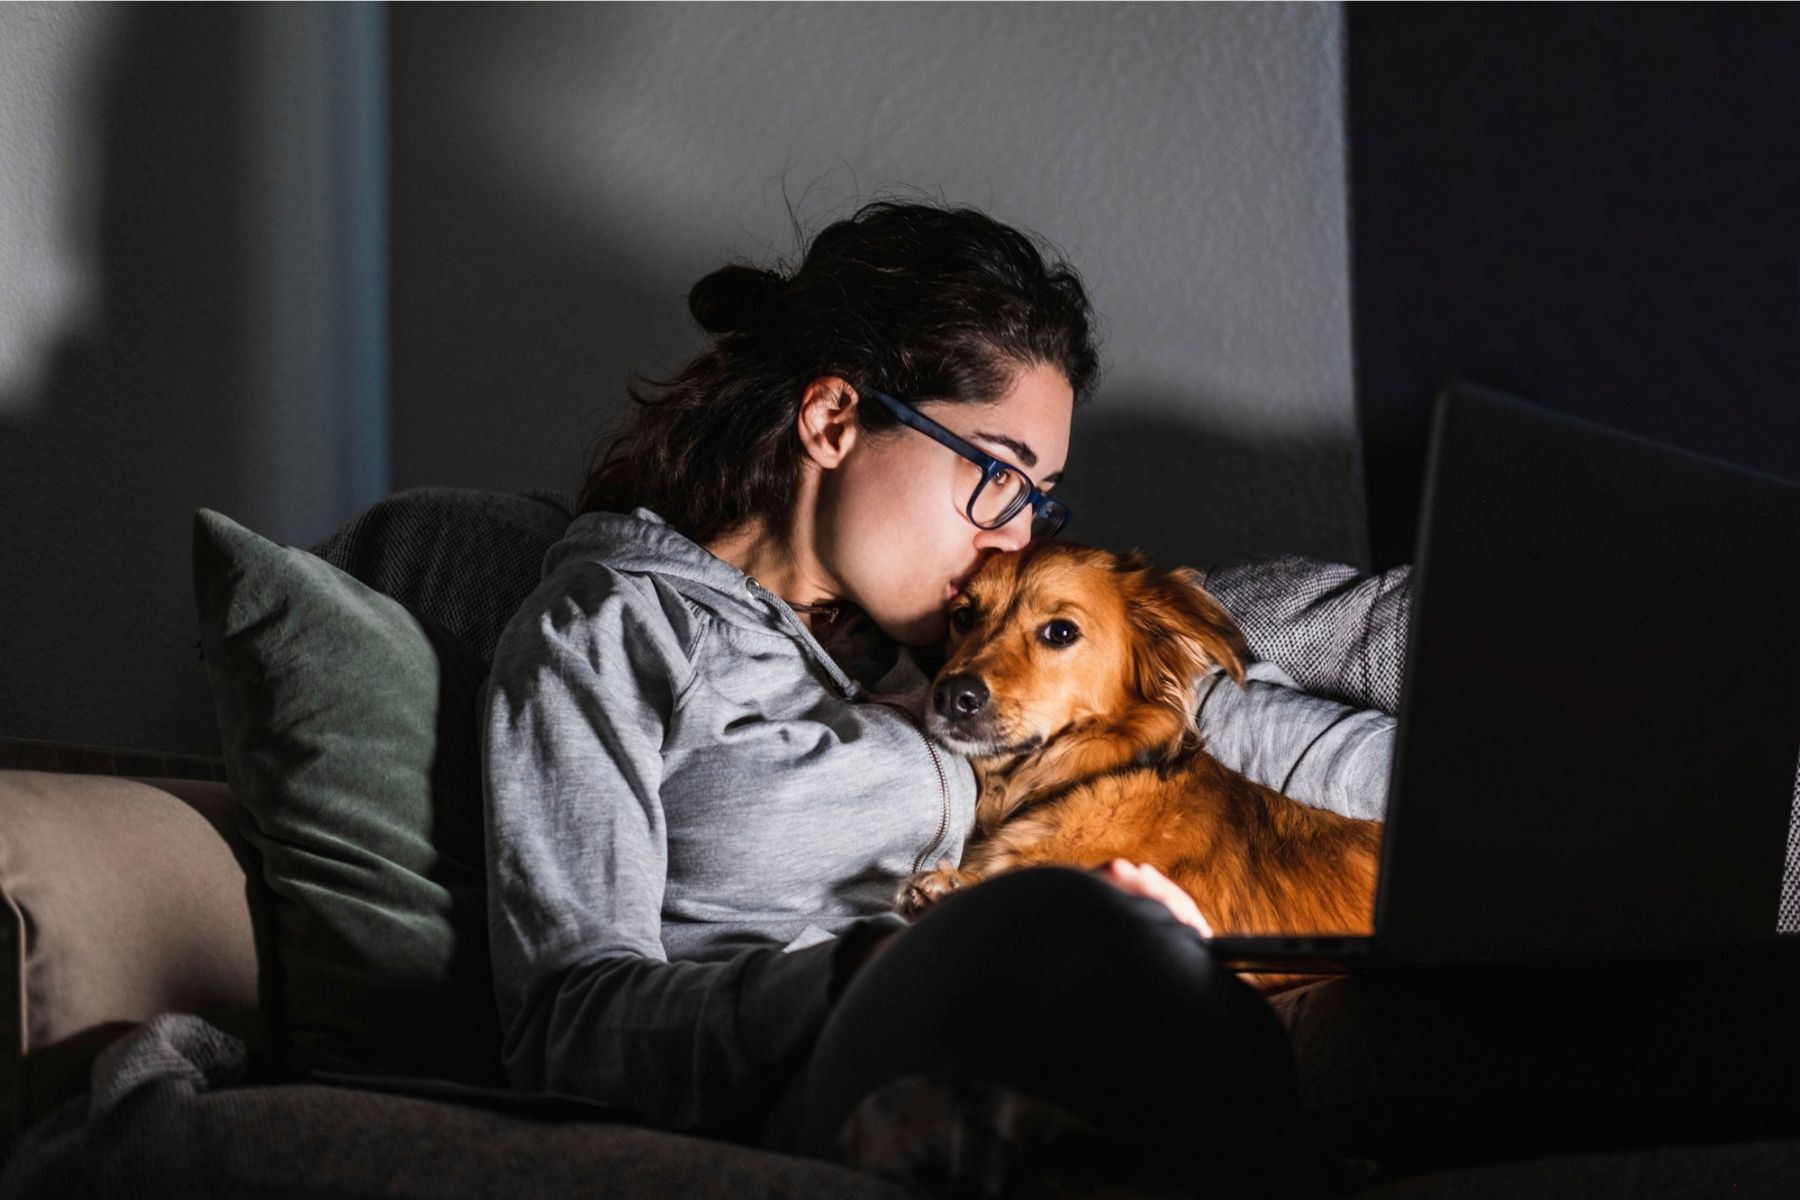 Matte ger sin lilla hund en puss i soffan framför en laptop